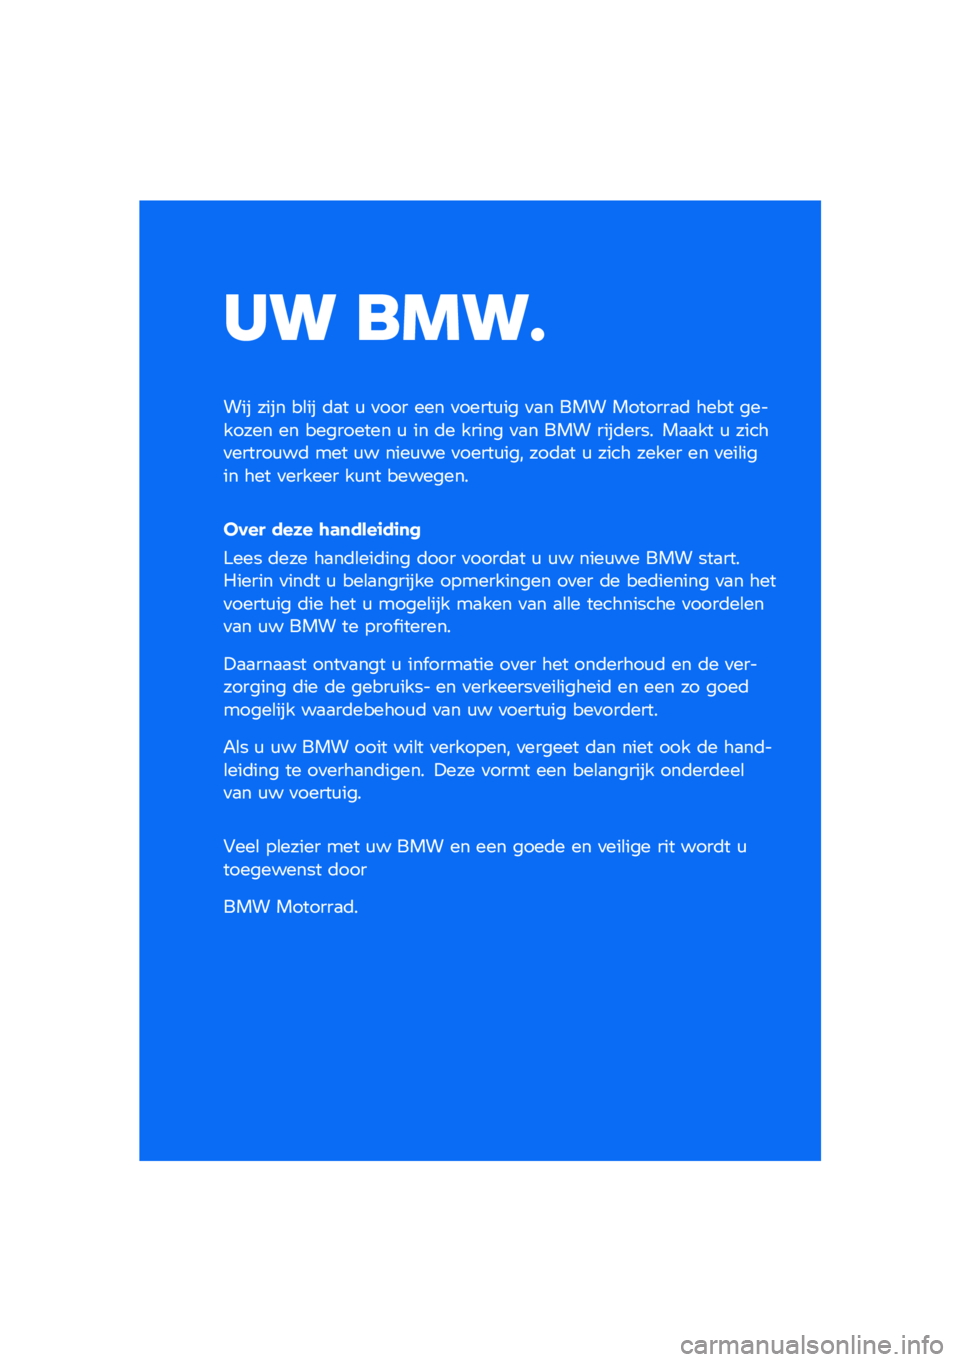 BMW MOTORRAD F 850 GS 2021  Handleiding (in Dutch) �� ����
��� ���� ��\b�� �	�
� �\f �
��� ��� �
�����\f�� �
�
� ��� �������
�	 ���� �������� �� ��������� �\f �� �	� ����� �
�
� �